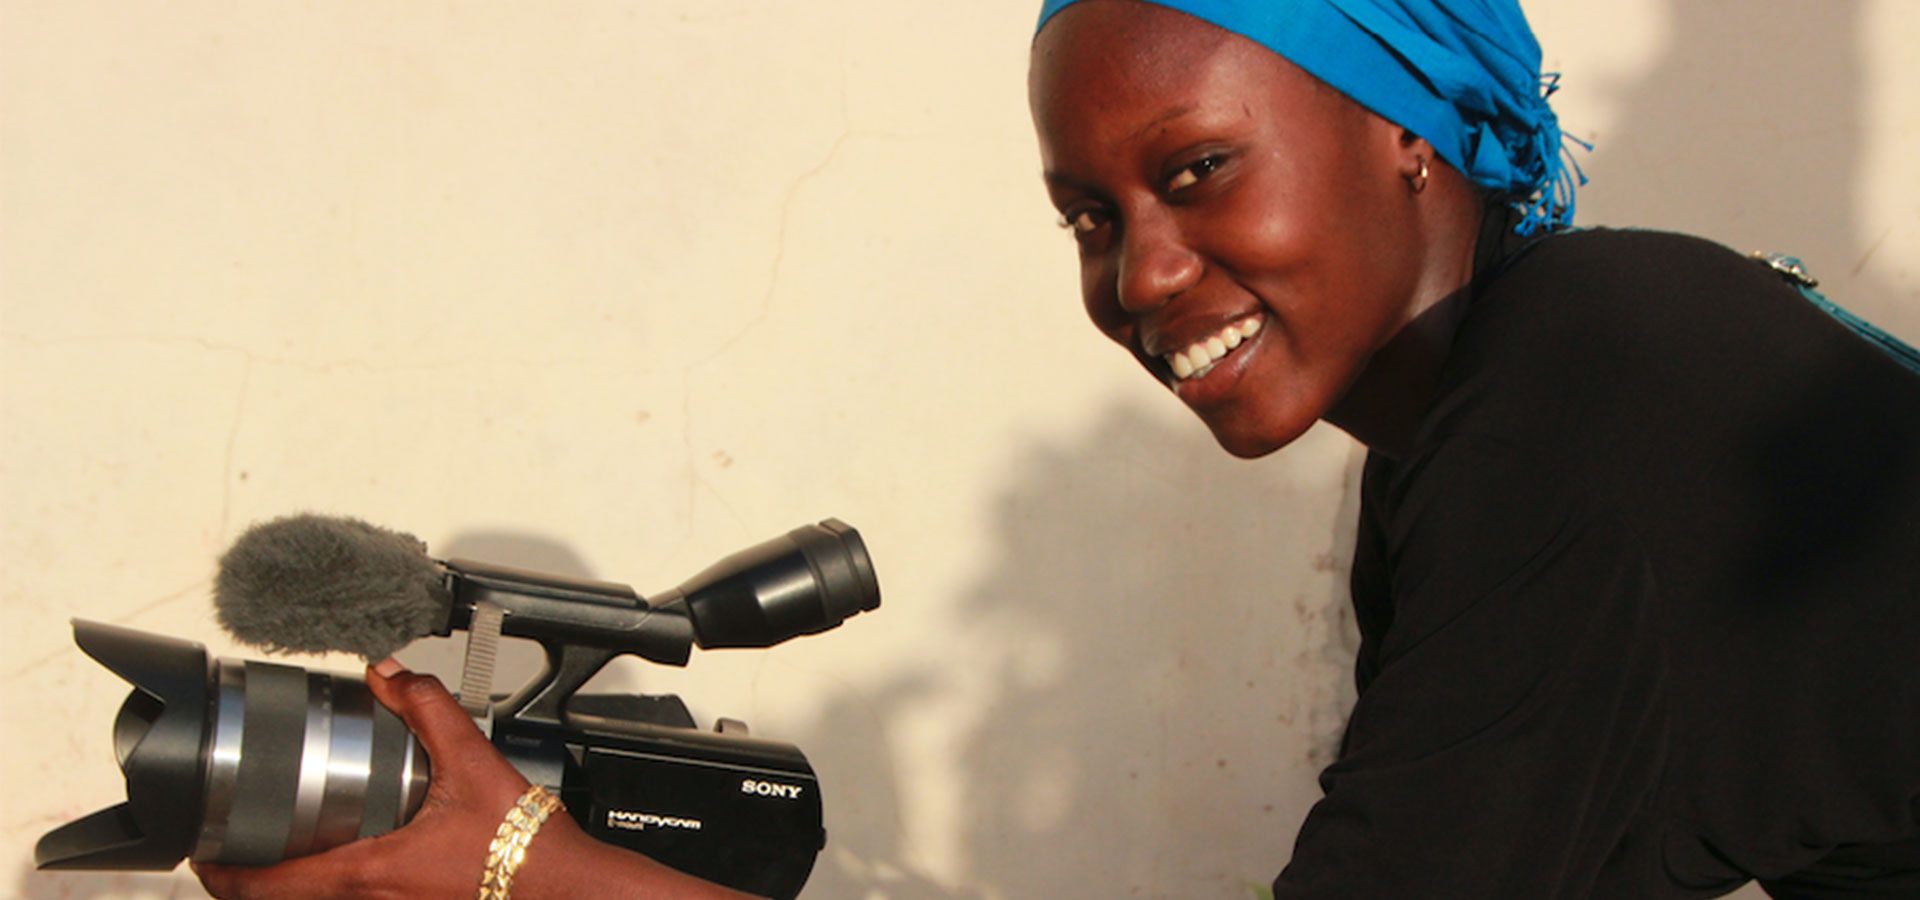 Formazione in web journalism-Senegal e giovani progetti per restare e ripartire